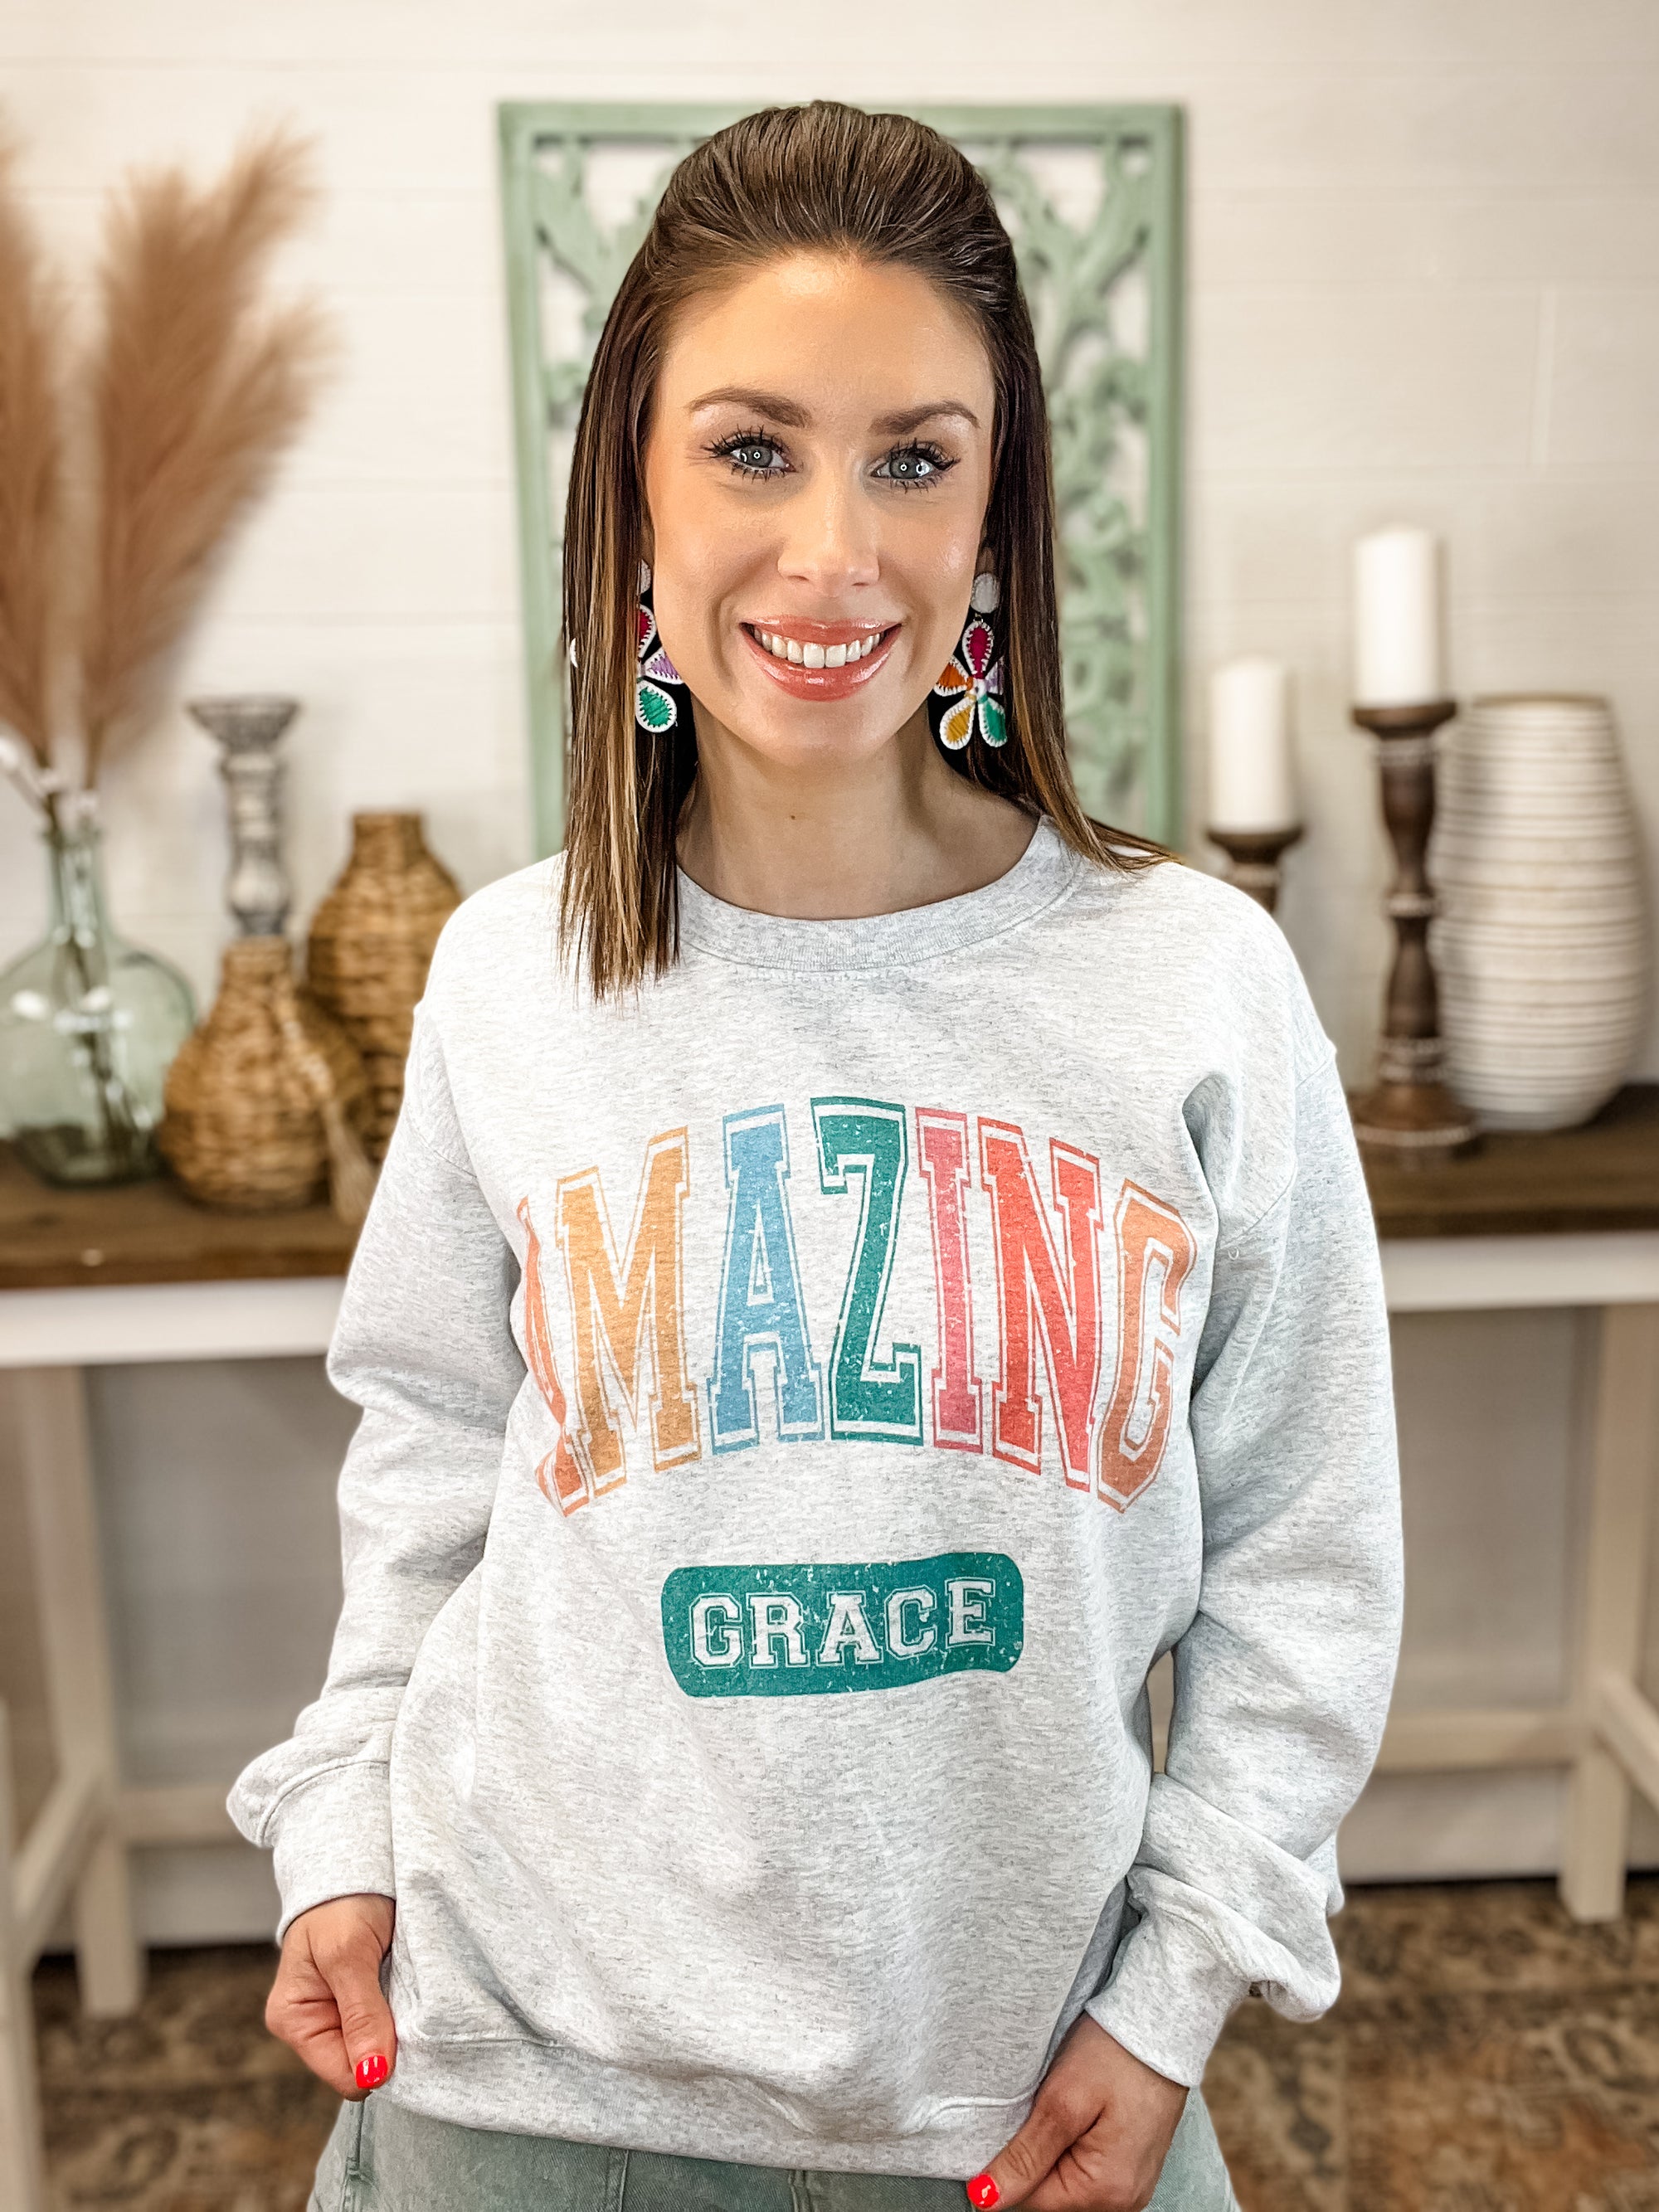 "AMAZING GRACE" Graphic Sweatshirt